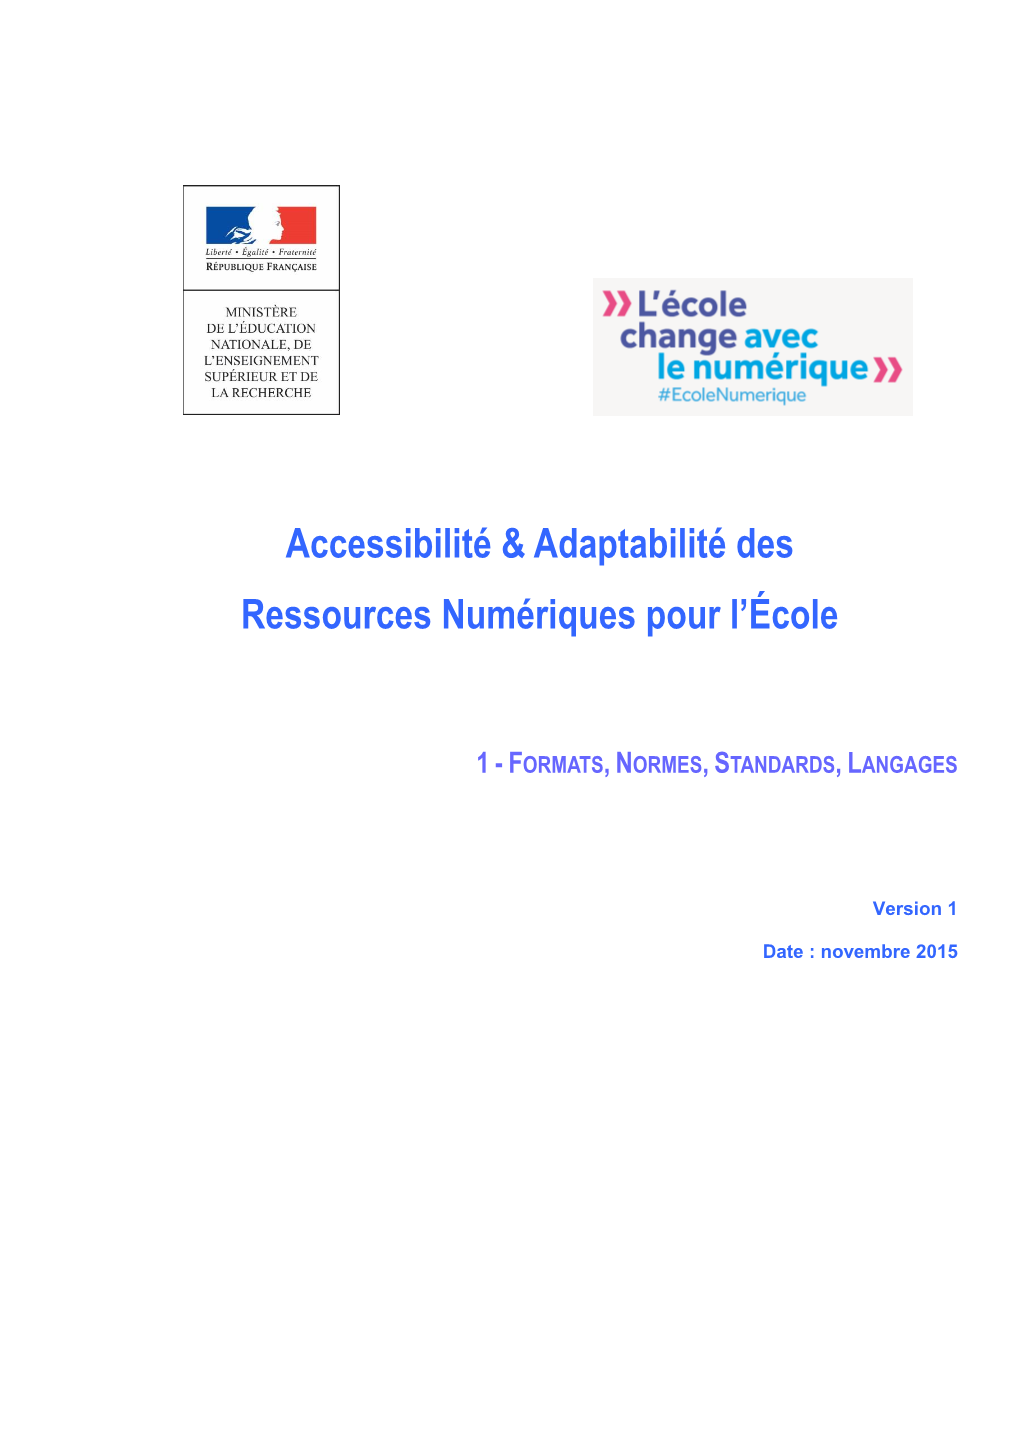 Accessibilité & Adaptabilité Des Ressources Numériques Pour L'école